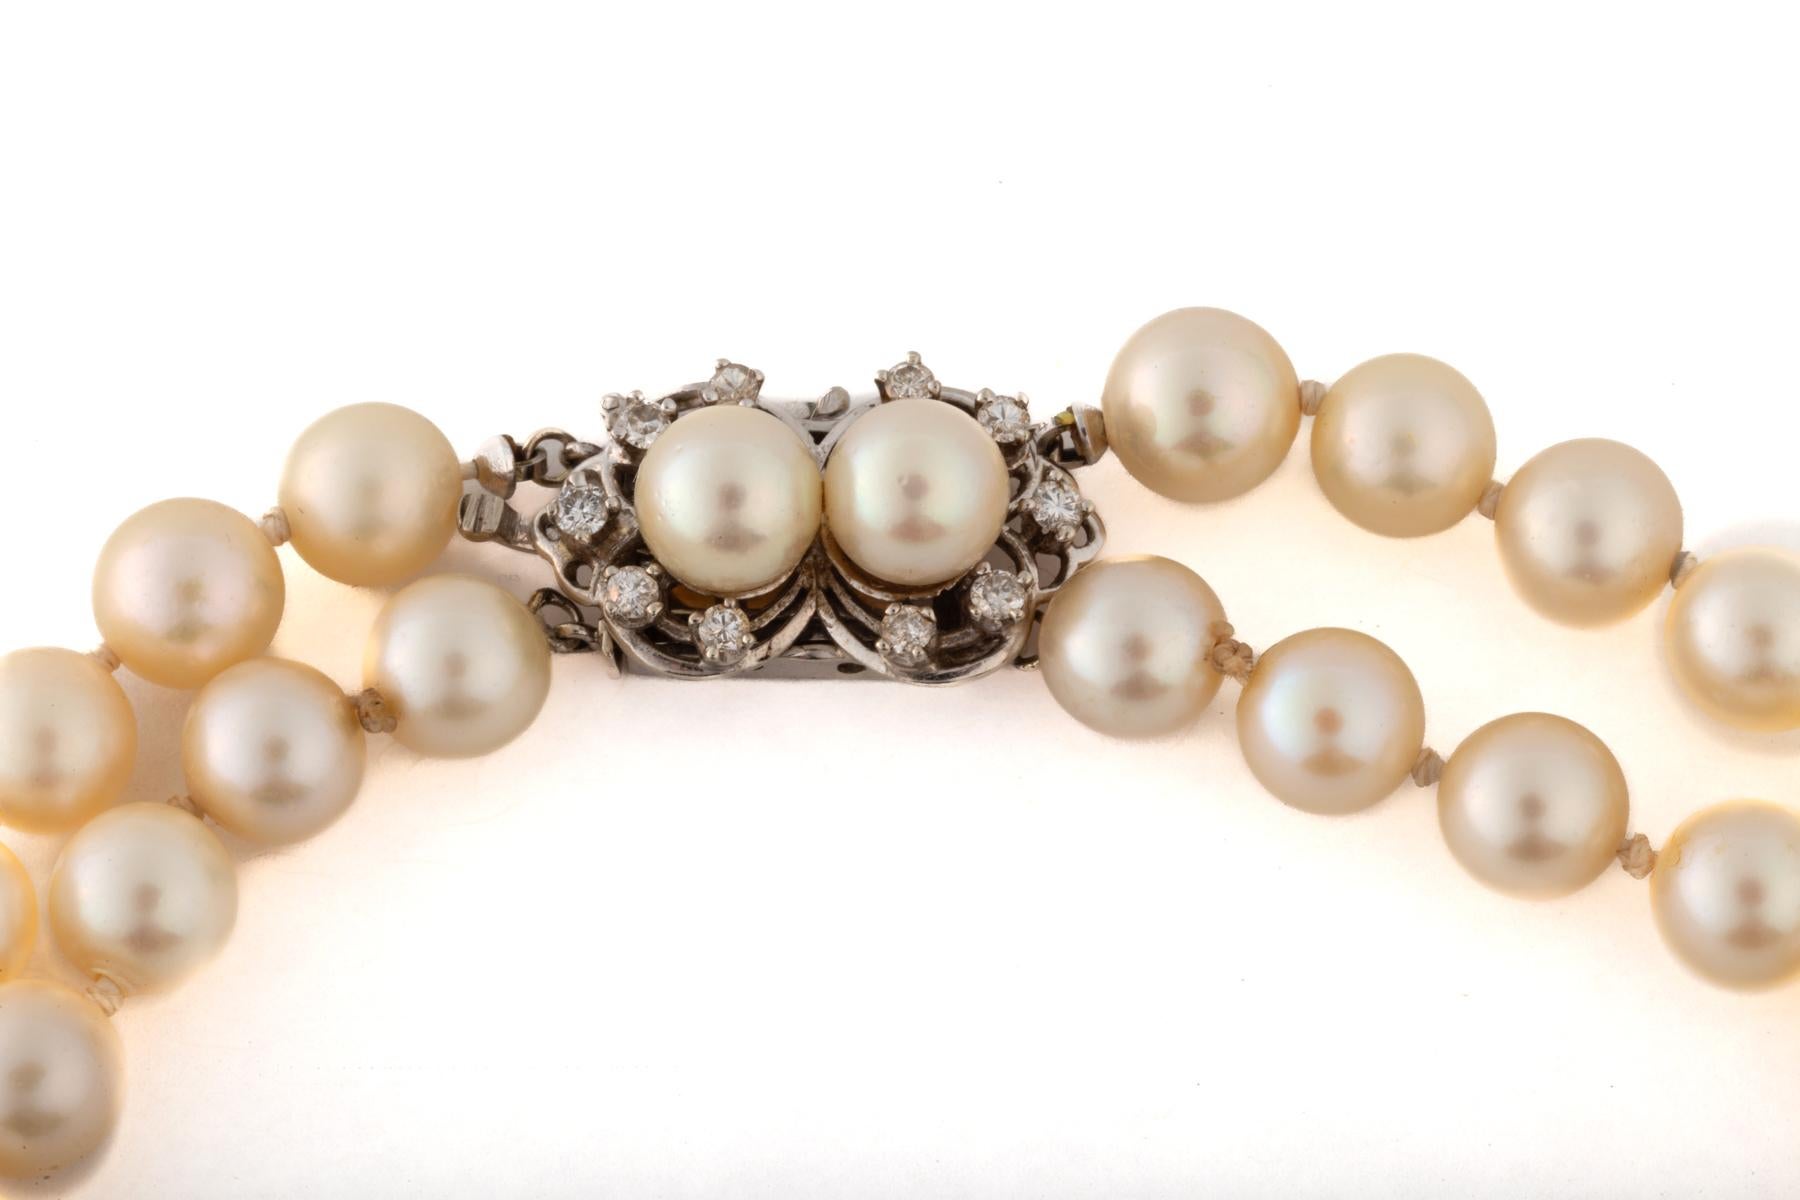 Un double rang de perles de culture de 7,143 mm est fermé par un magnifique fermoir en perles et diamants. Les perles sont portées aujourd'hui comme à l'époque géorgienne. Ces mèches sont de couleur crème avec une touche de rose. Les perles sont